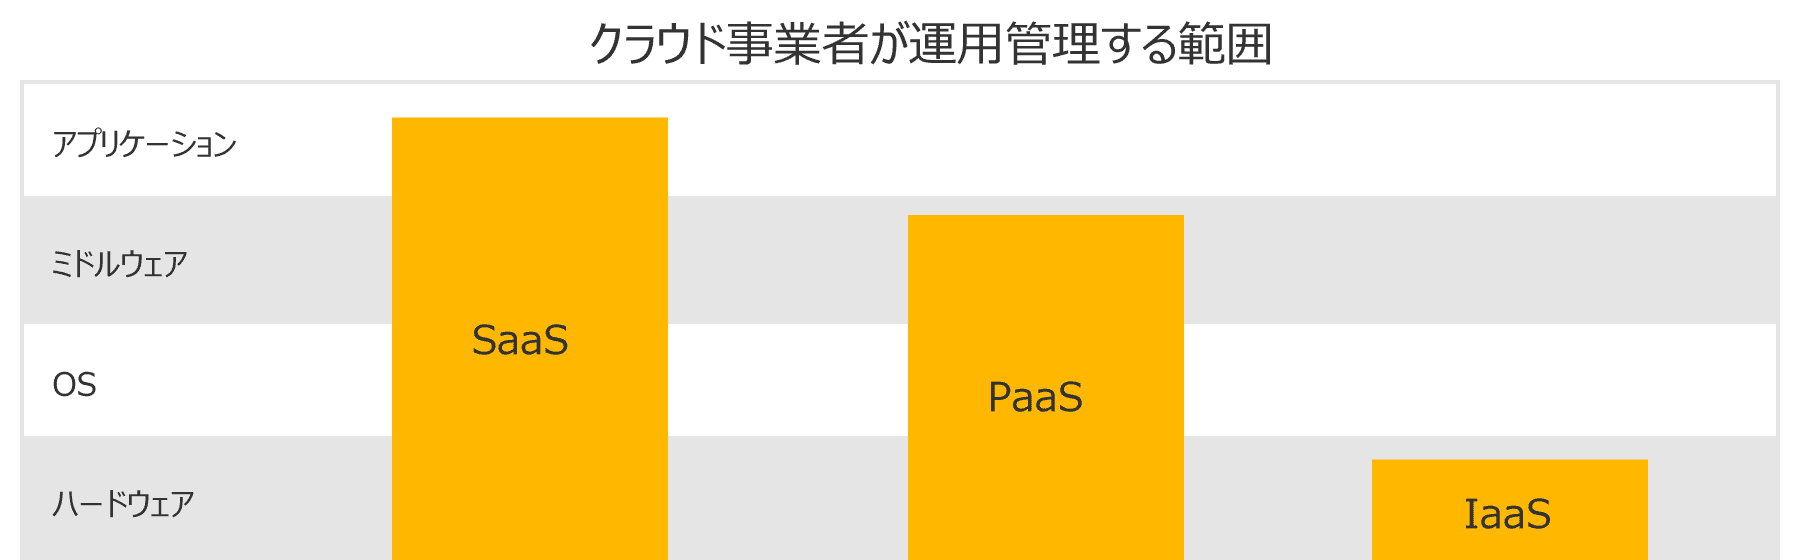 SaaS,PaaS,IaaSの比較イメージ